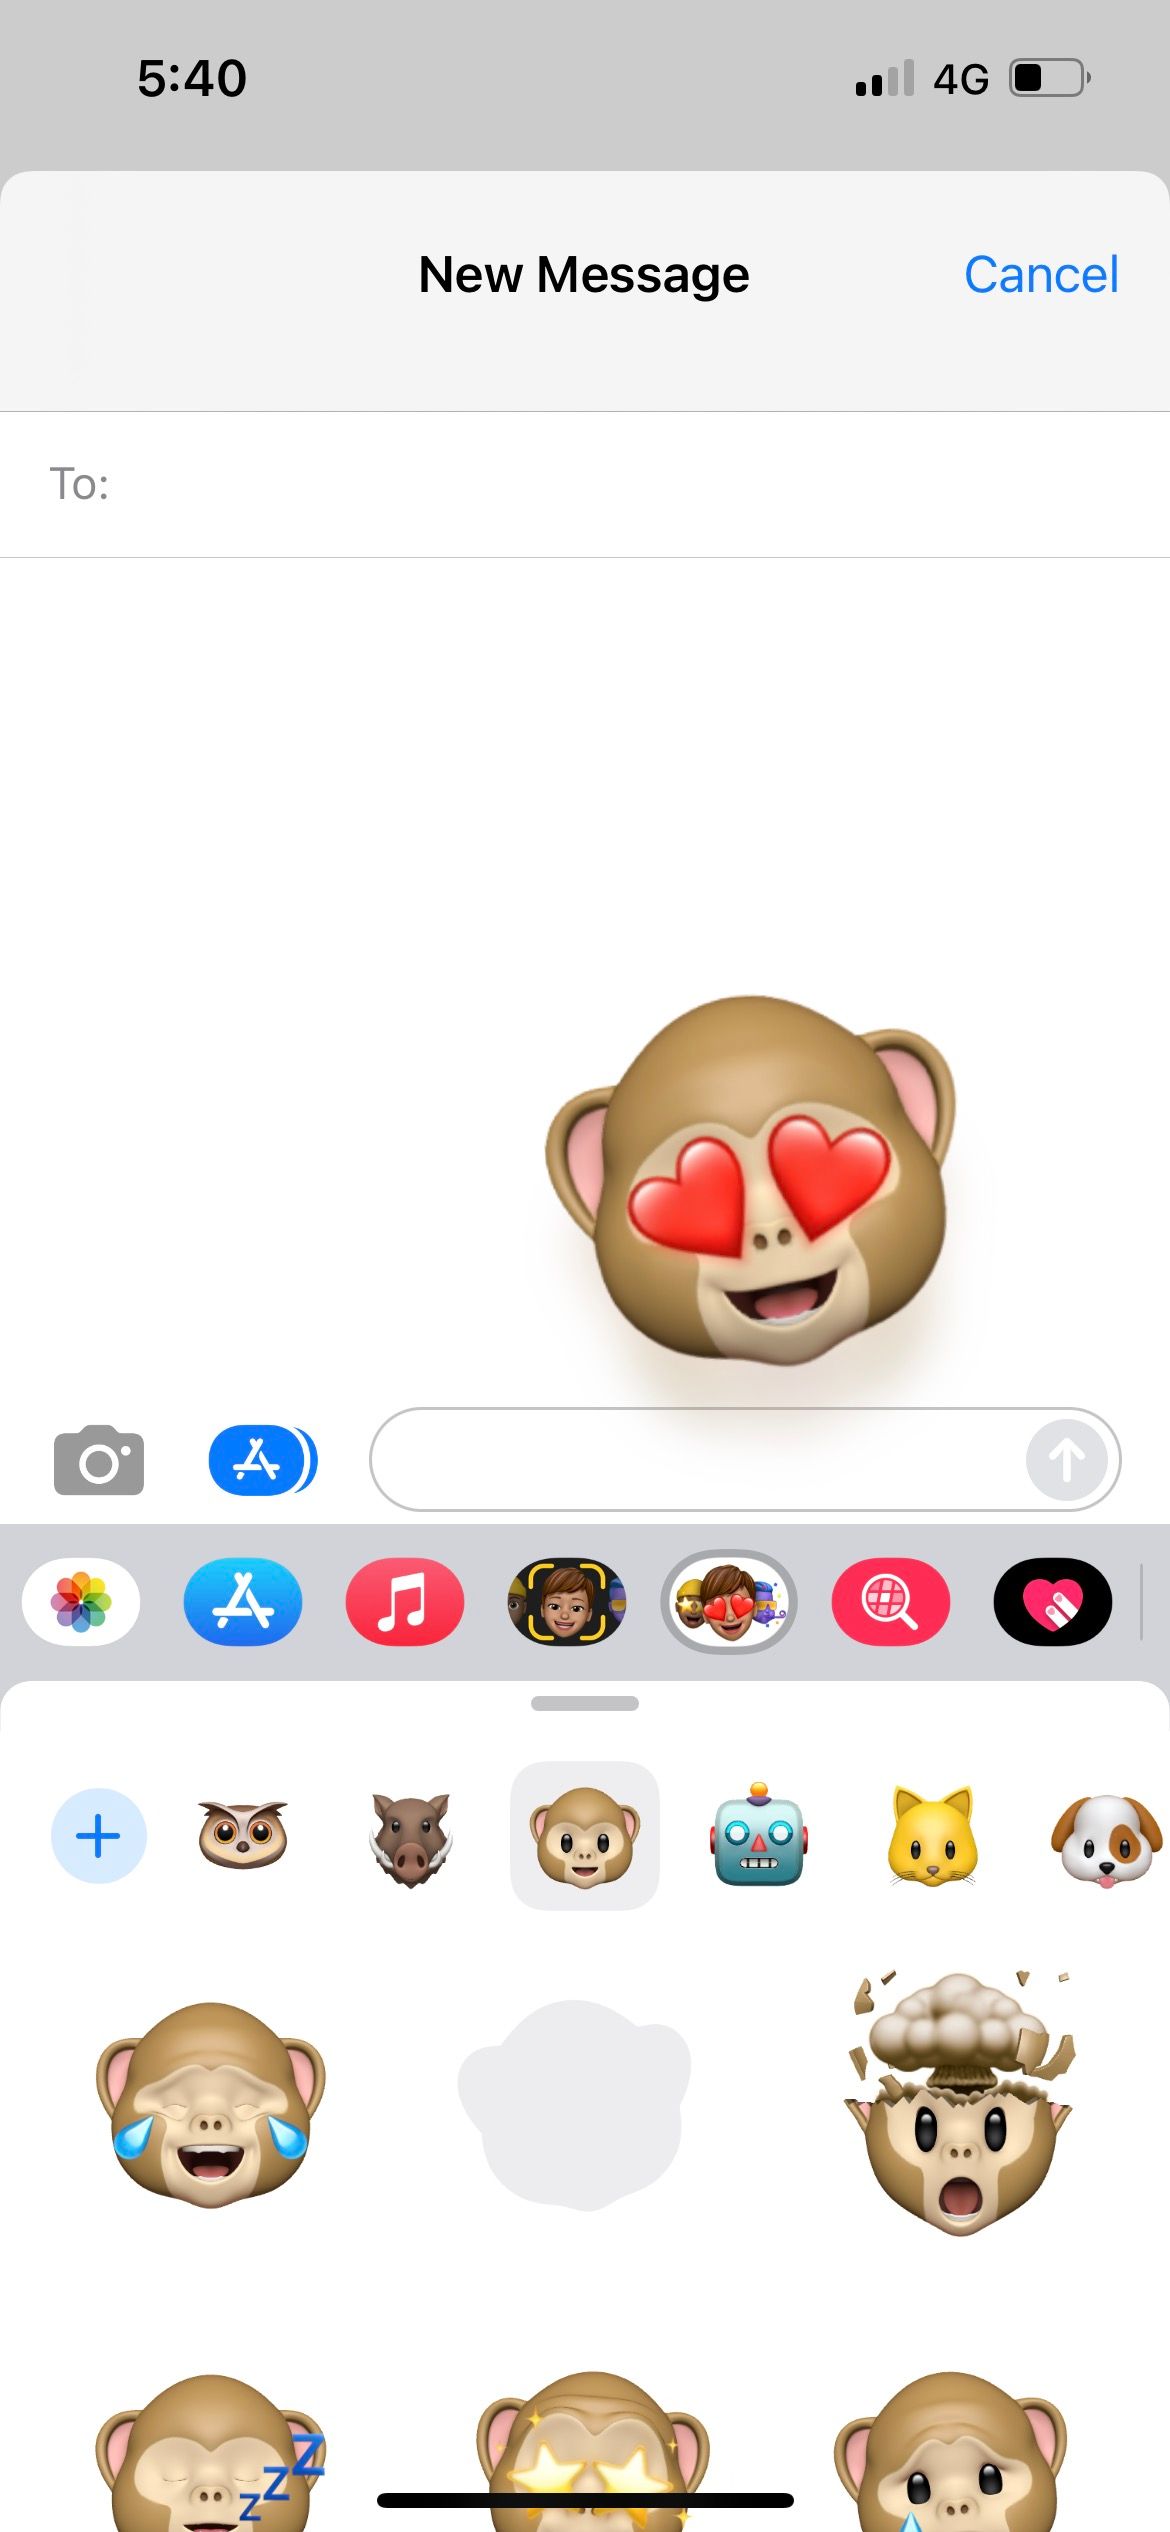 استیکر انیموجی میمون را در برنامه پیام های آیفون ارسال کنید